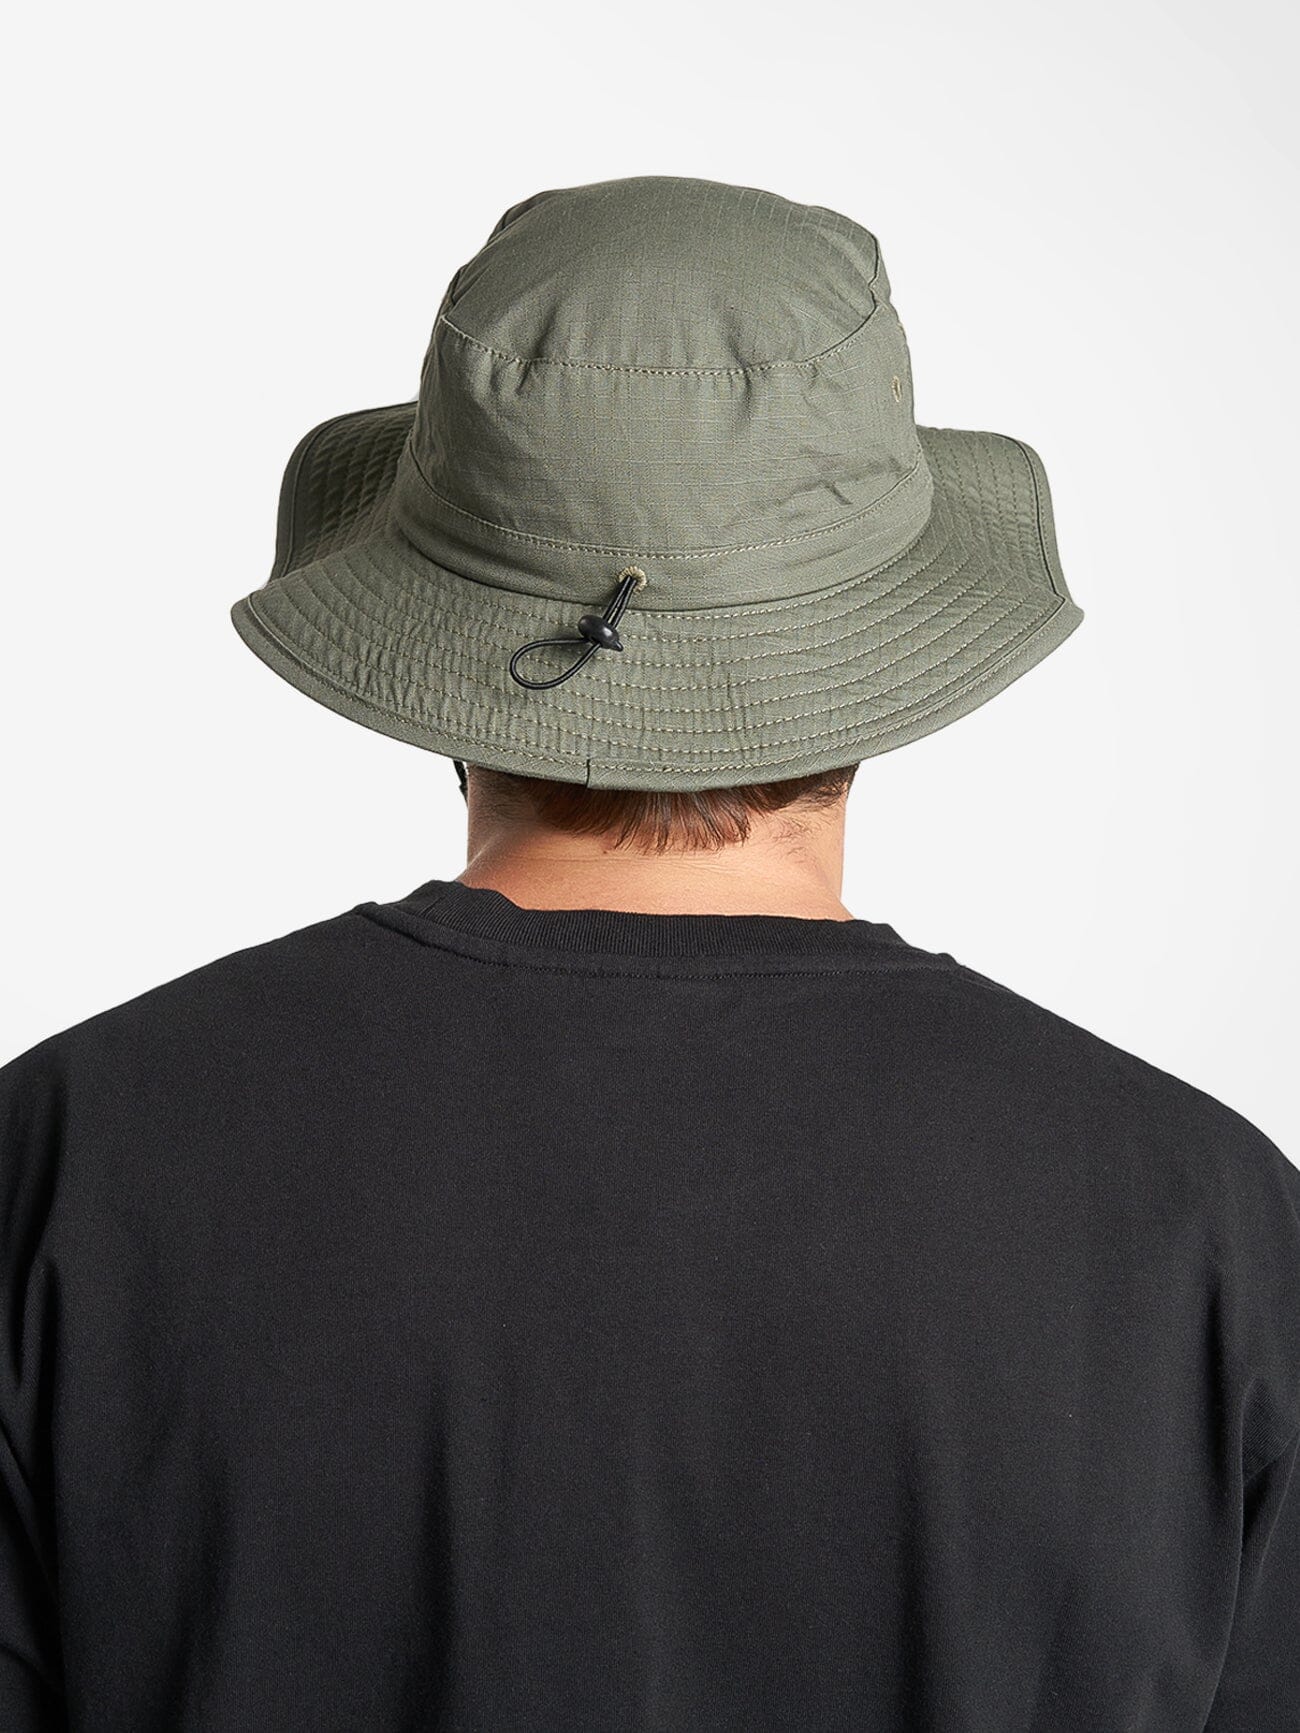 Thrills Boonie Hat - Army Green